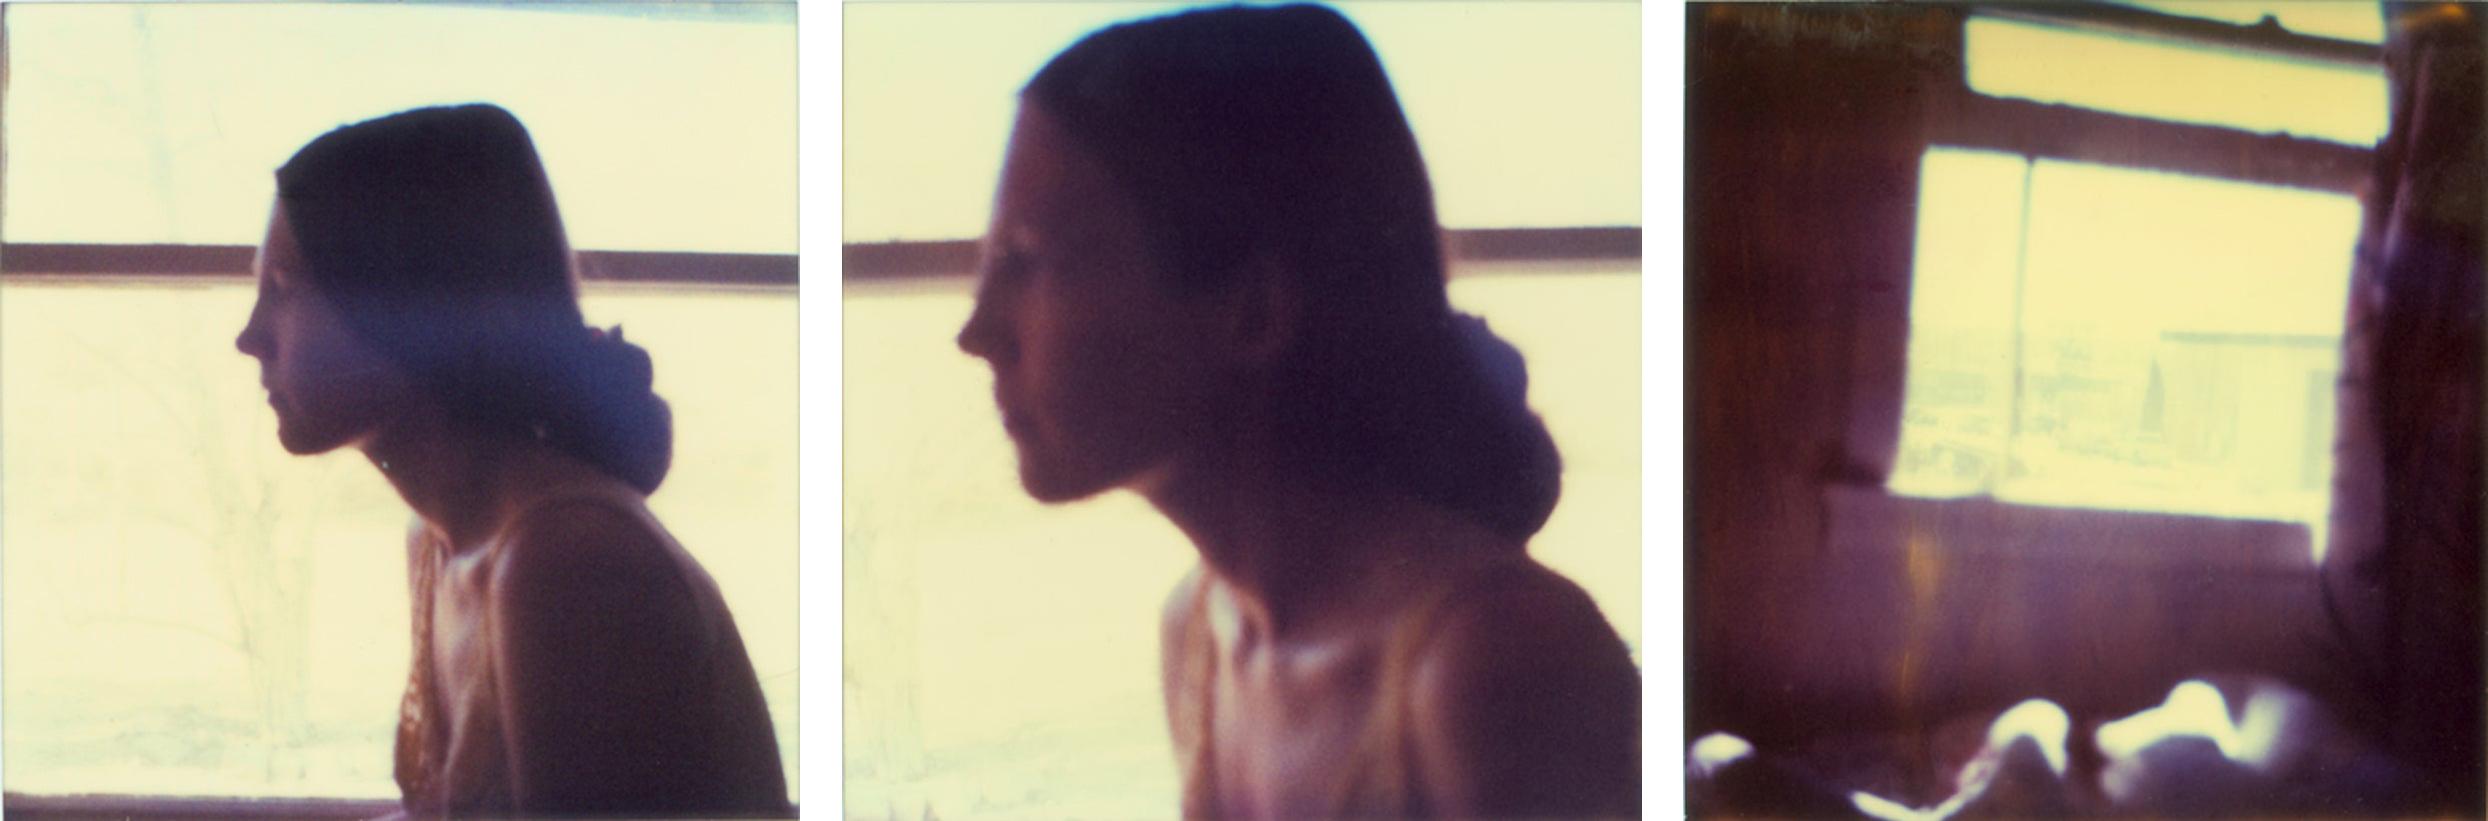 Stefanie Schneider Portrait Photograph – Lone Pine Motel II (Die letzte Bilderschau) - 21. Jahrhundert, Polaroid, Frau